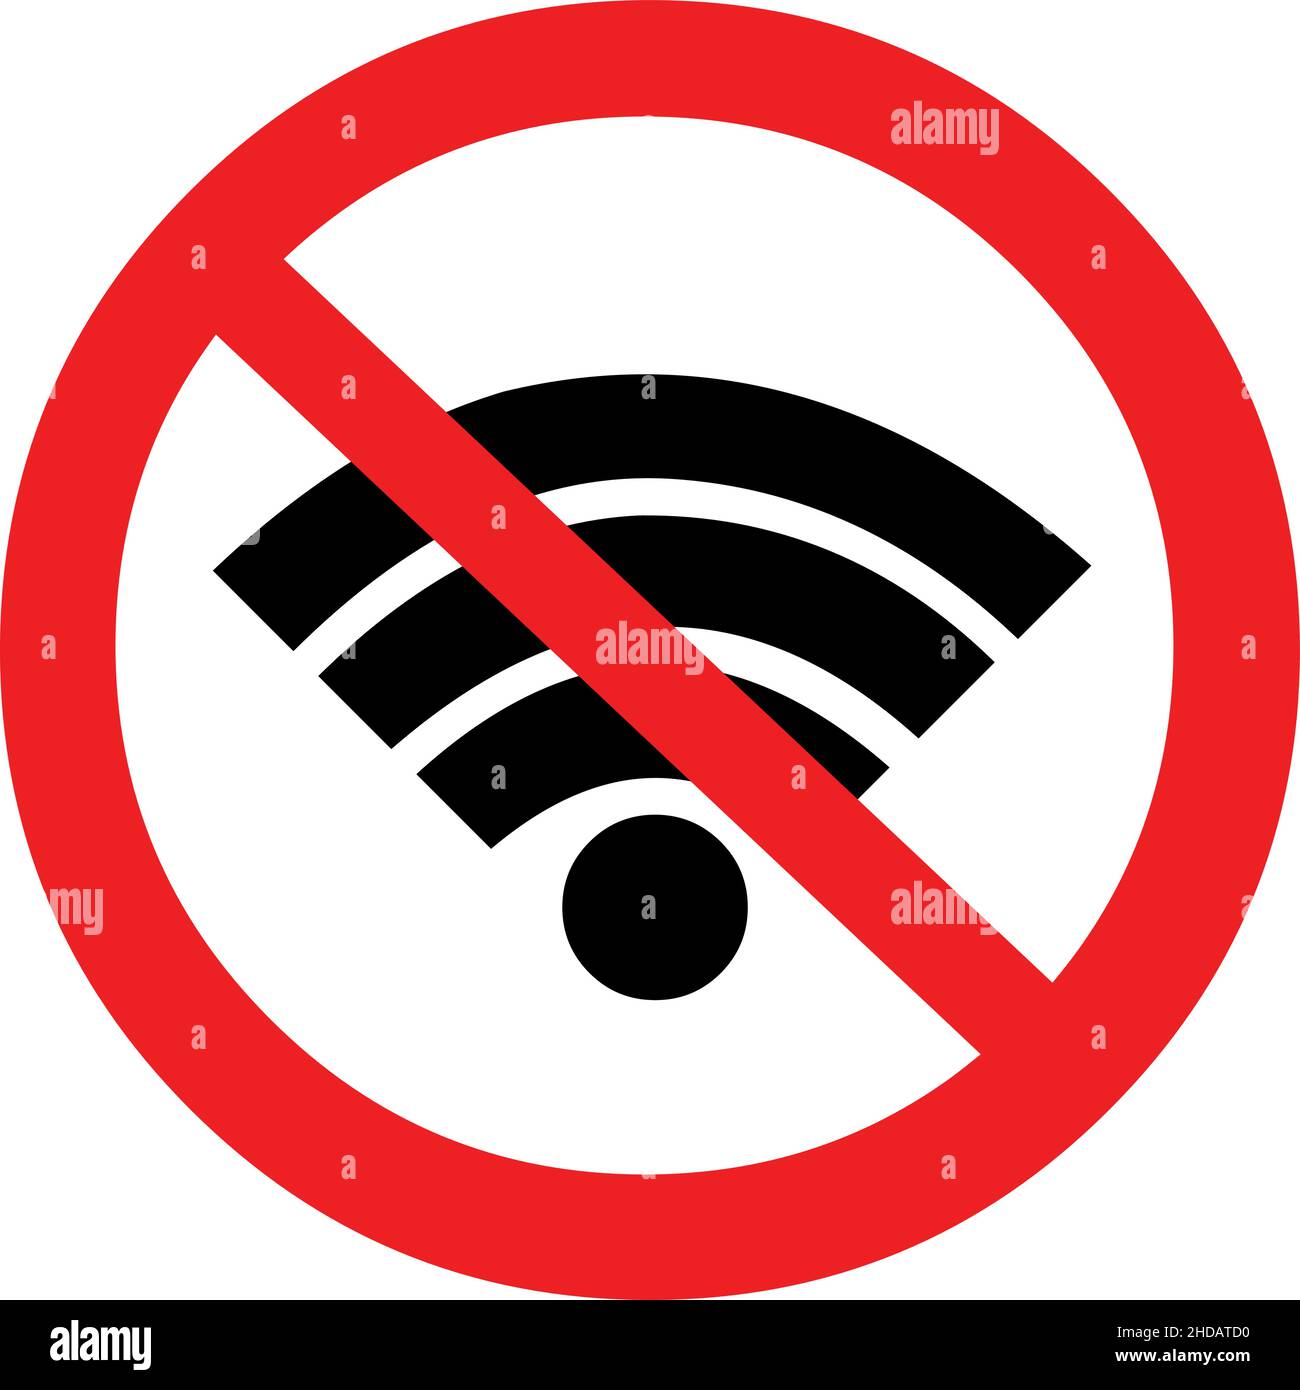 Ilustración vectorial del icono de wifi dentro de un signo prohibido, en concepto de Internet desconectado Ilustración del Vector